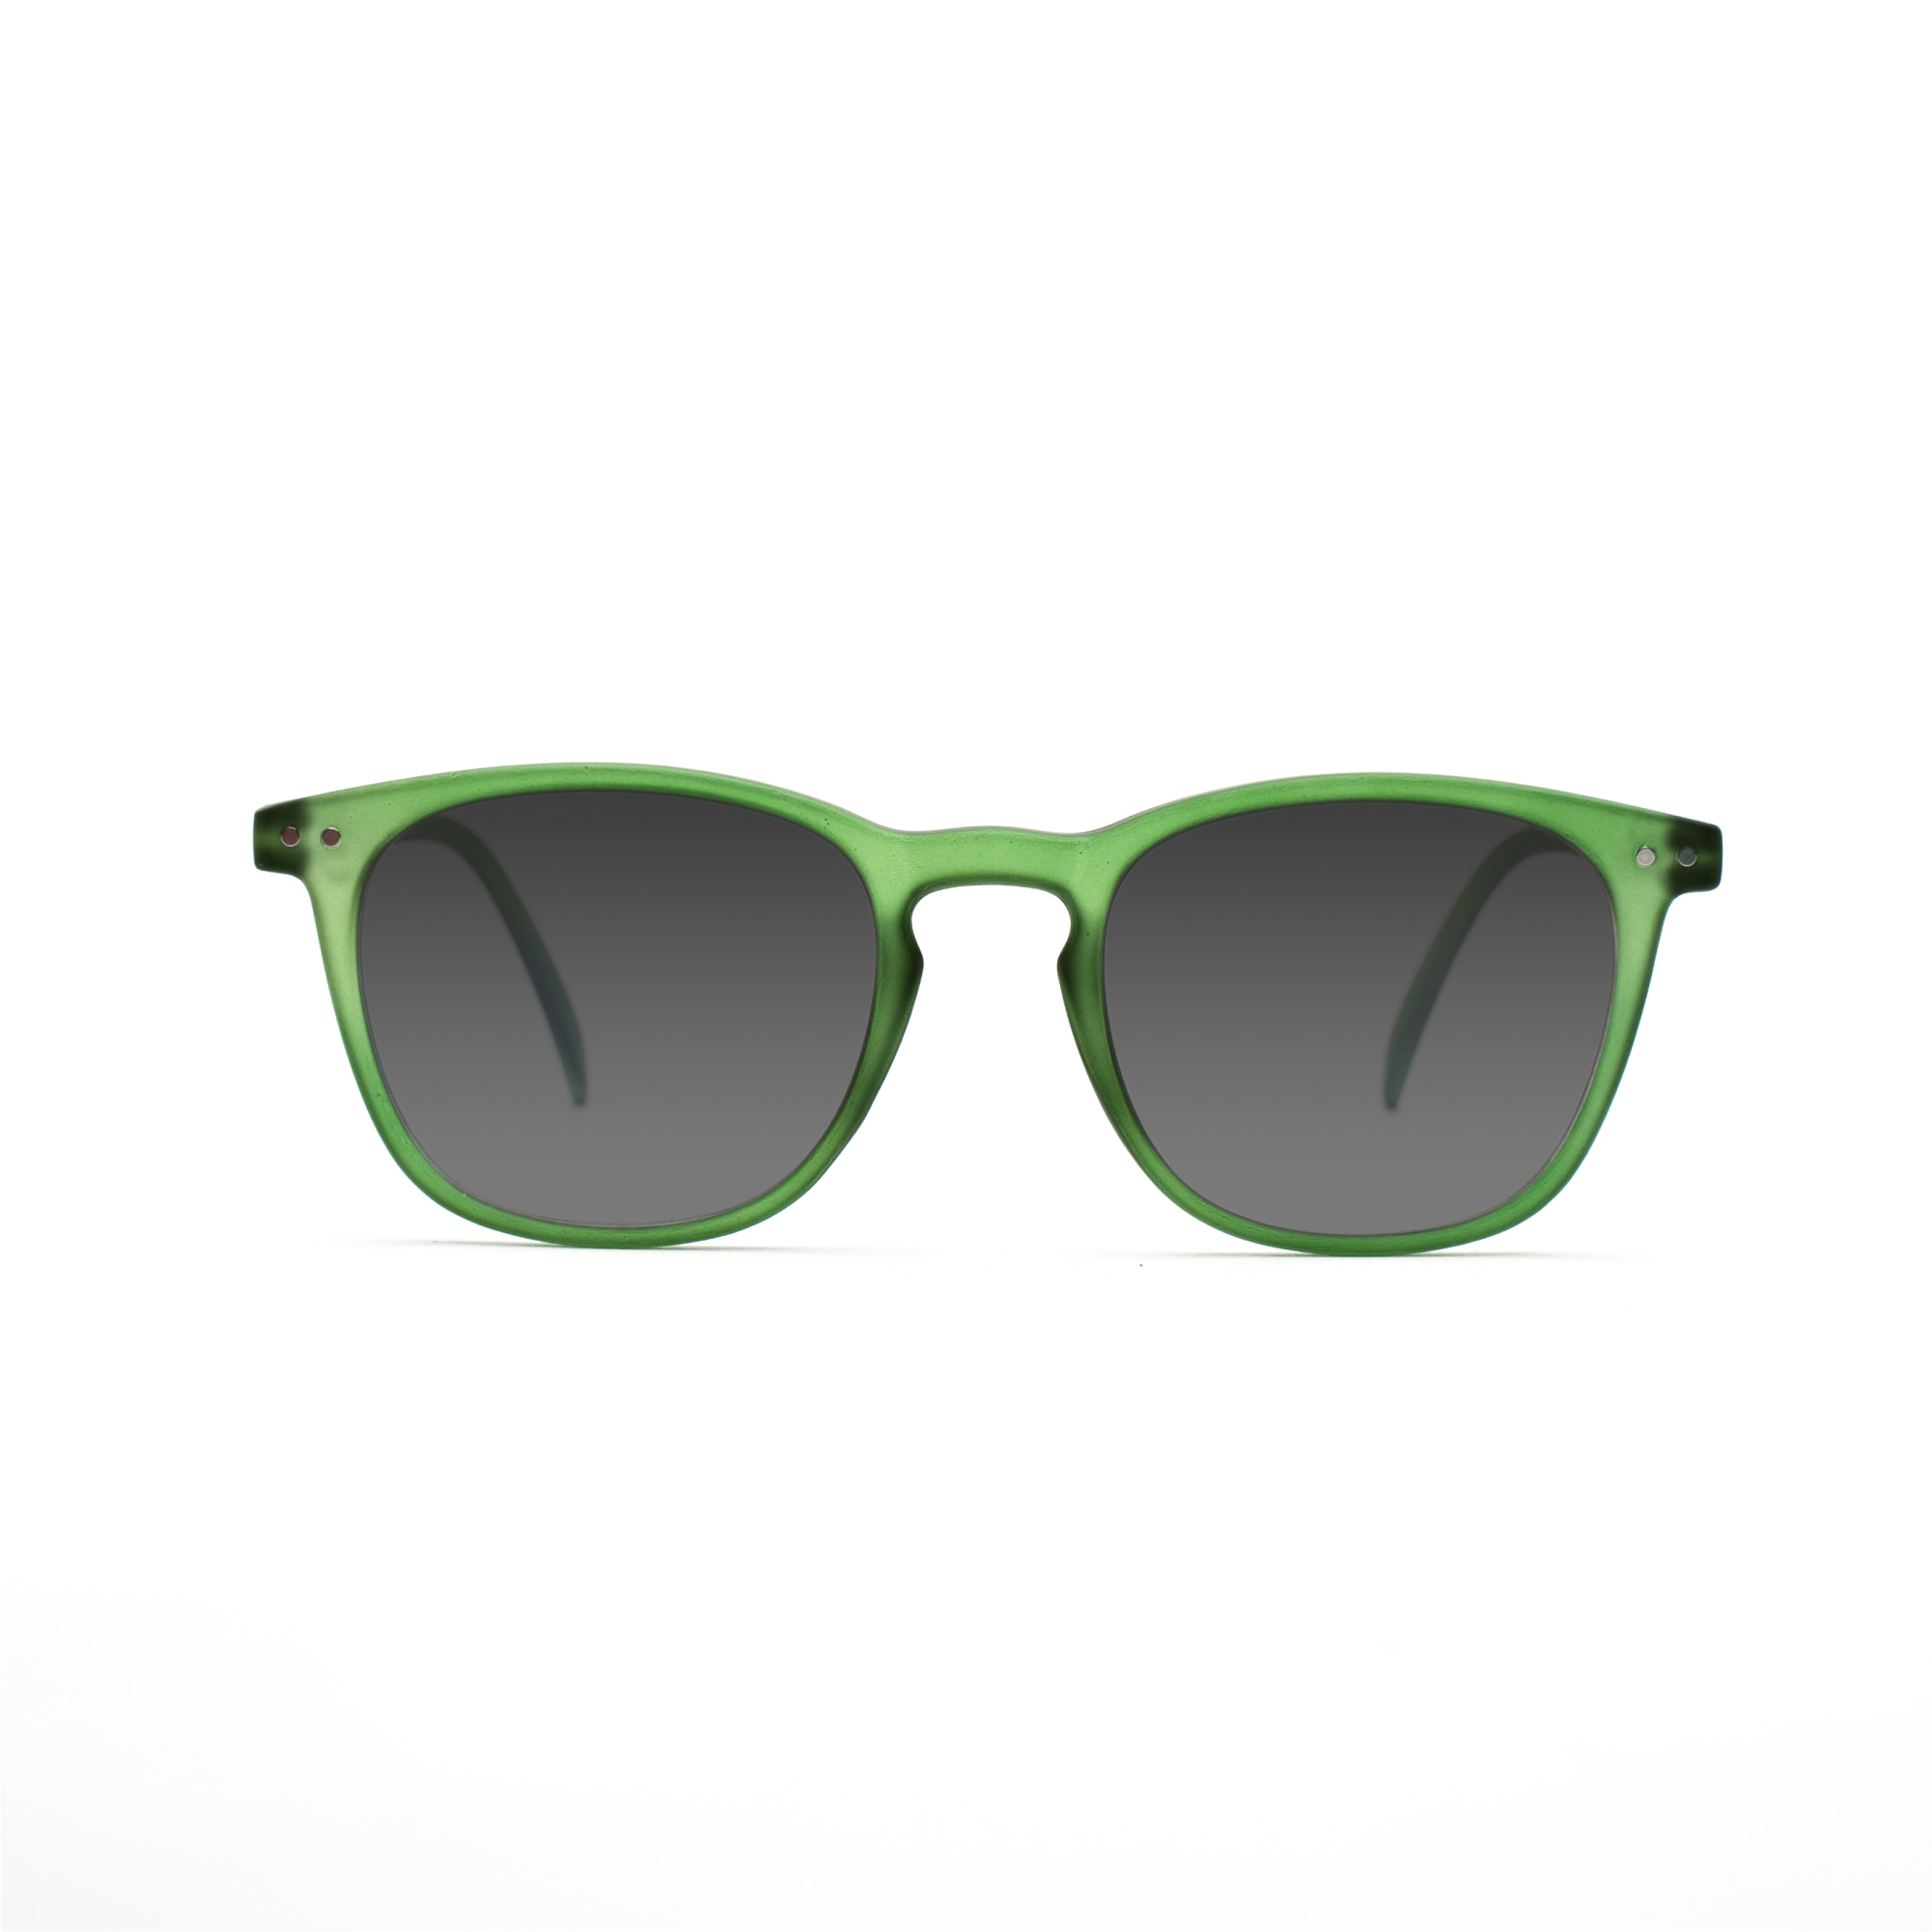 men's polarized sunglasses – William Polarised SUN m - Green